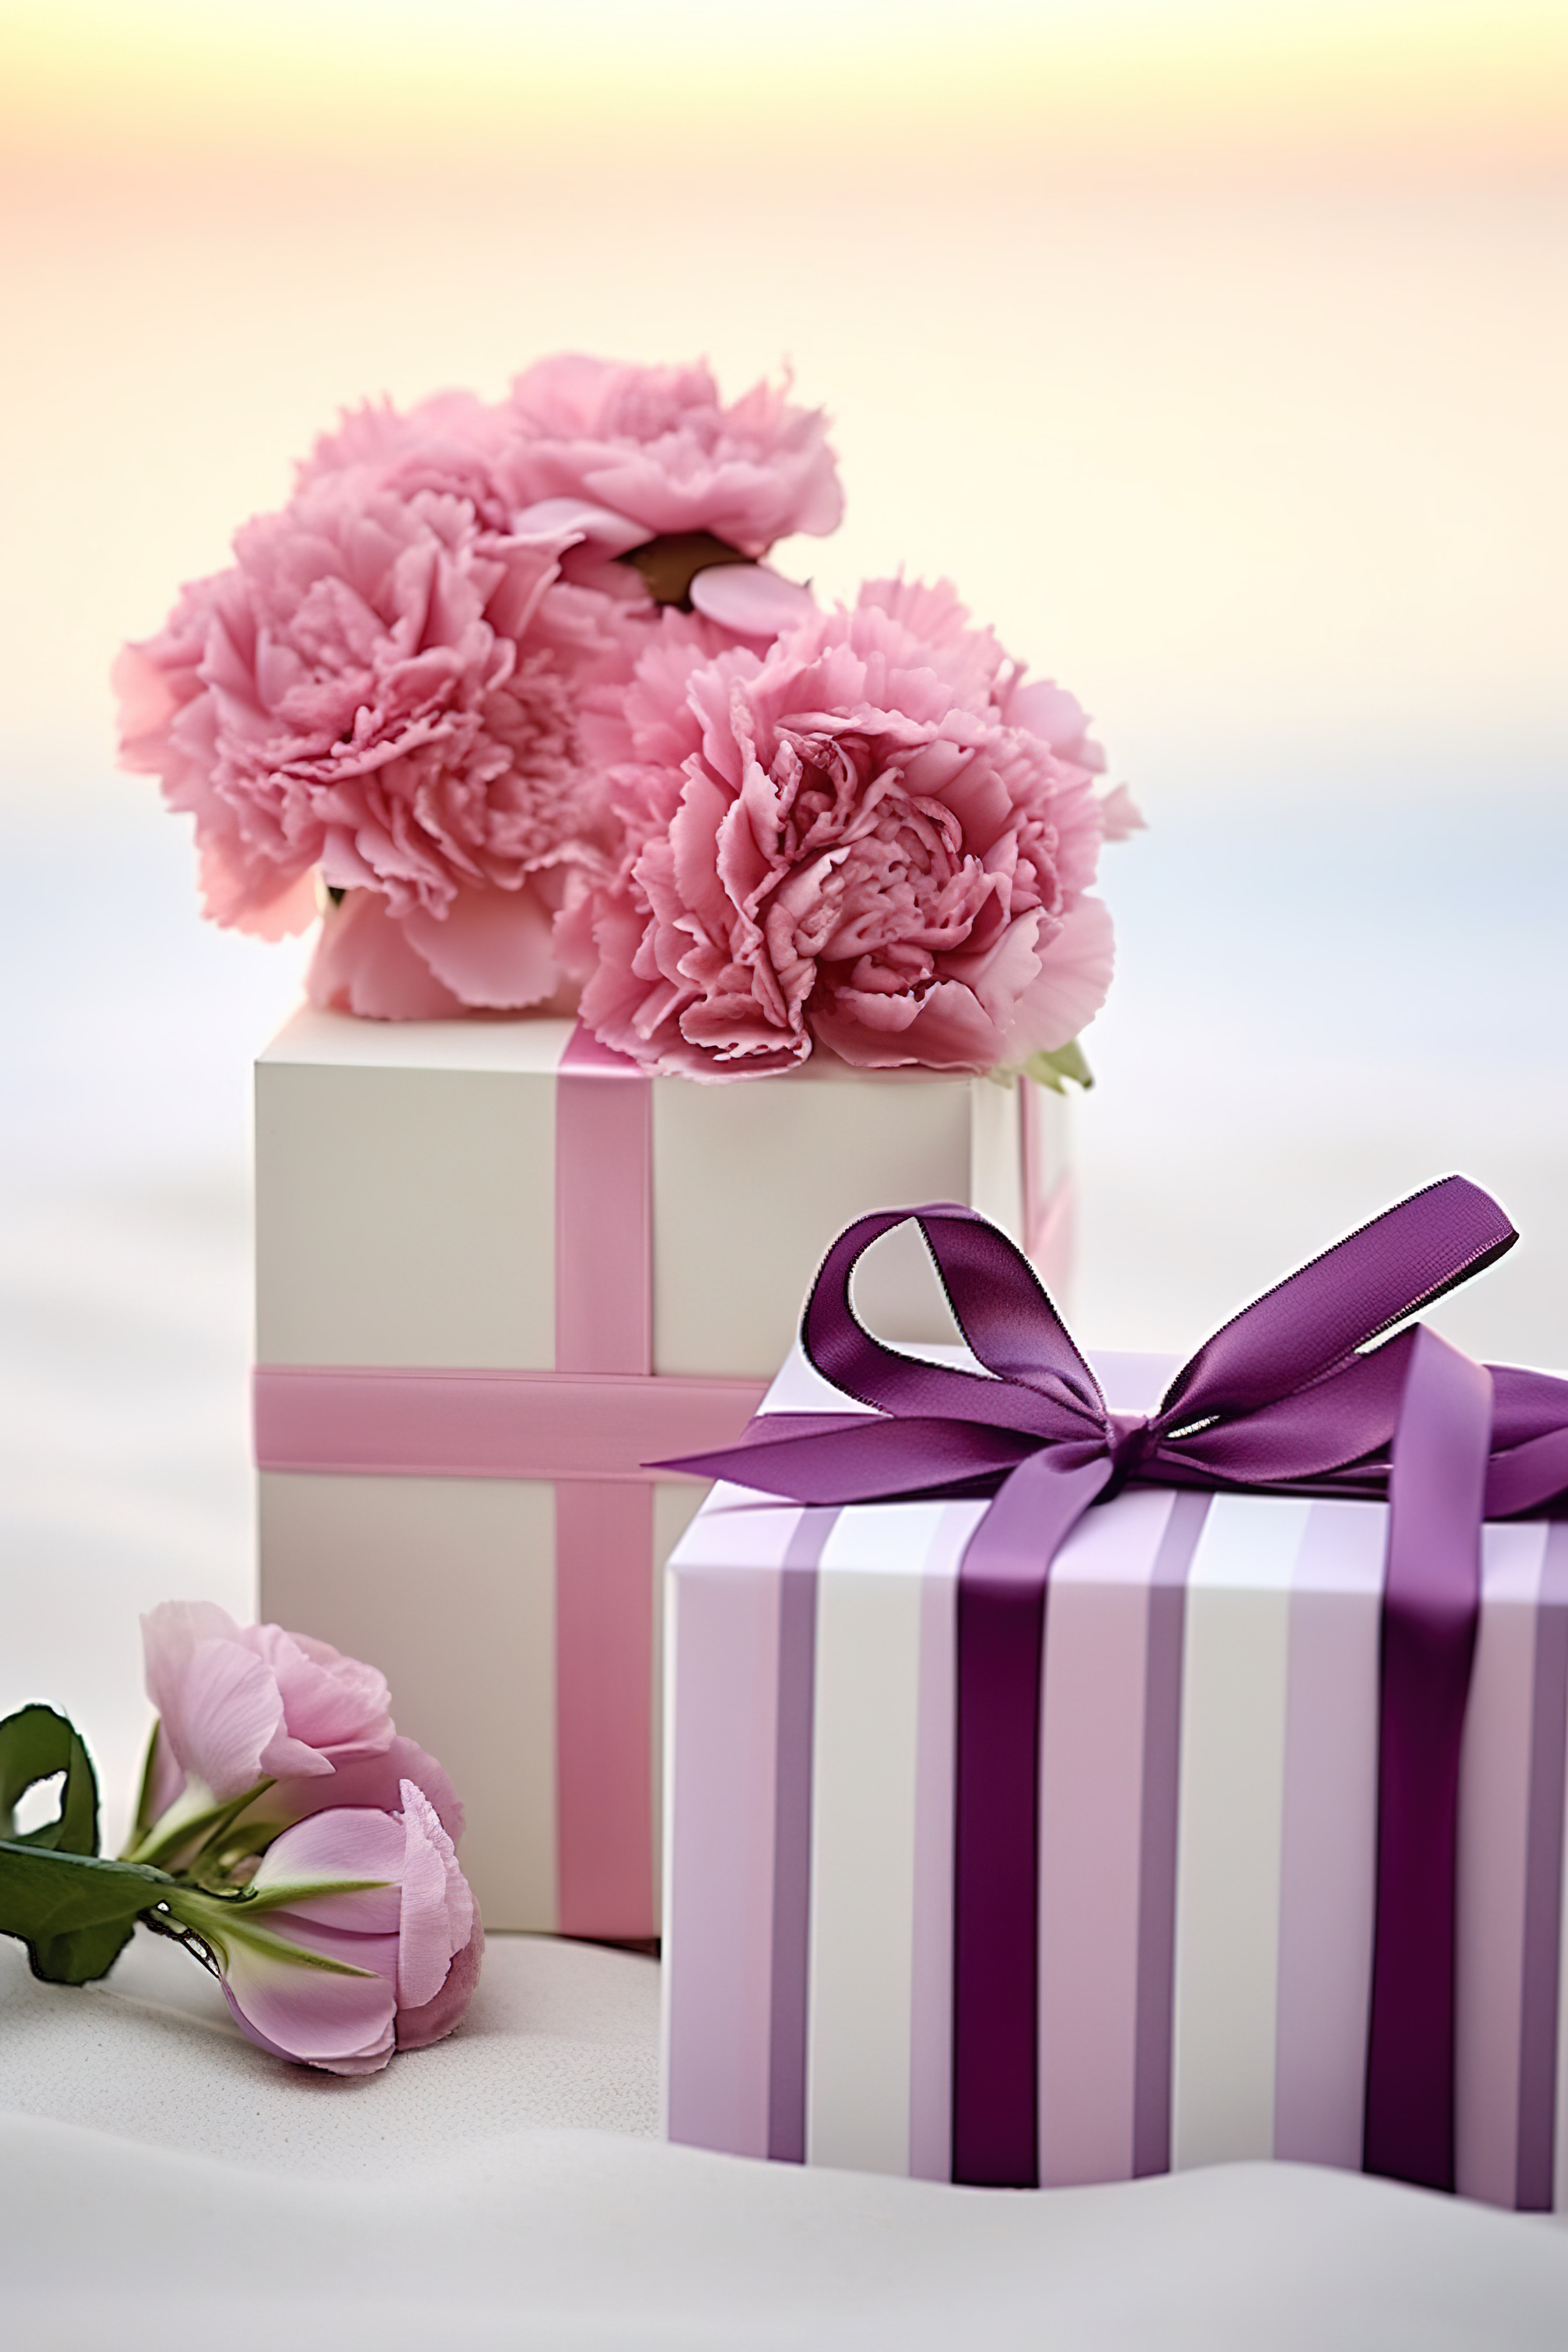 三个装满粉红色花朵的礼盒图片